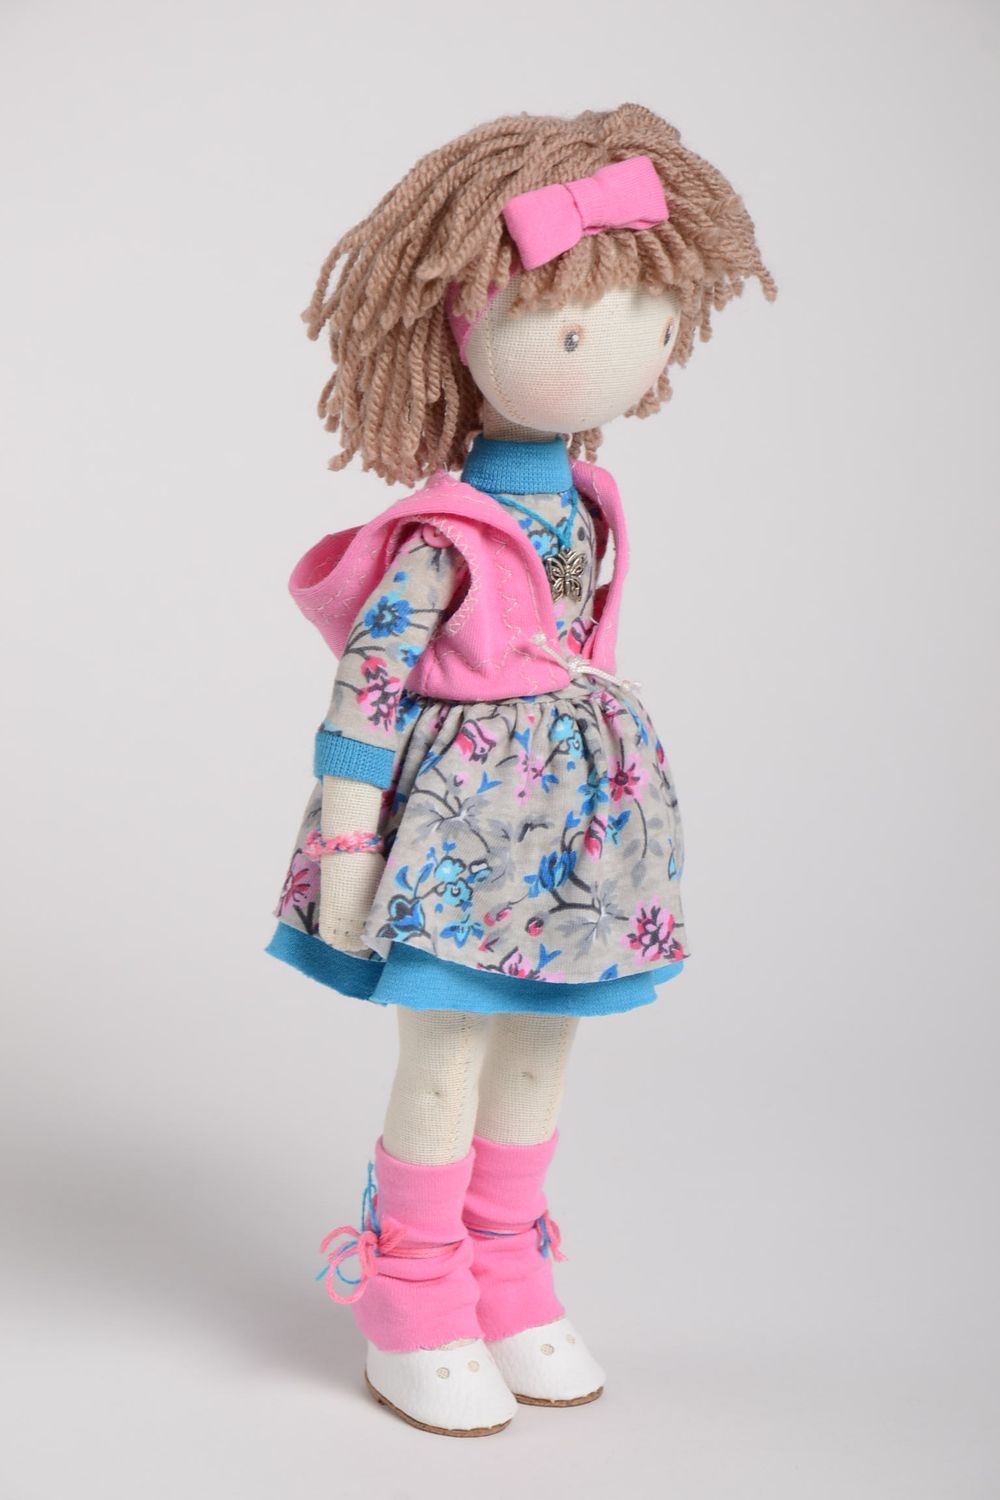 Handmade Designer Puppe Stoff Spielzeug süße schöne Puppe im bunten Kleid foto 2